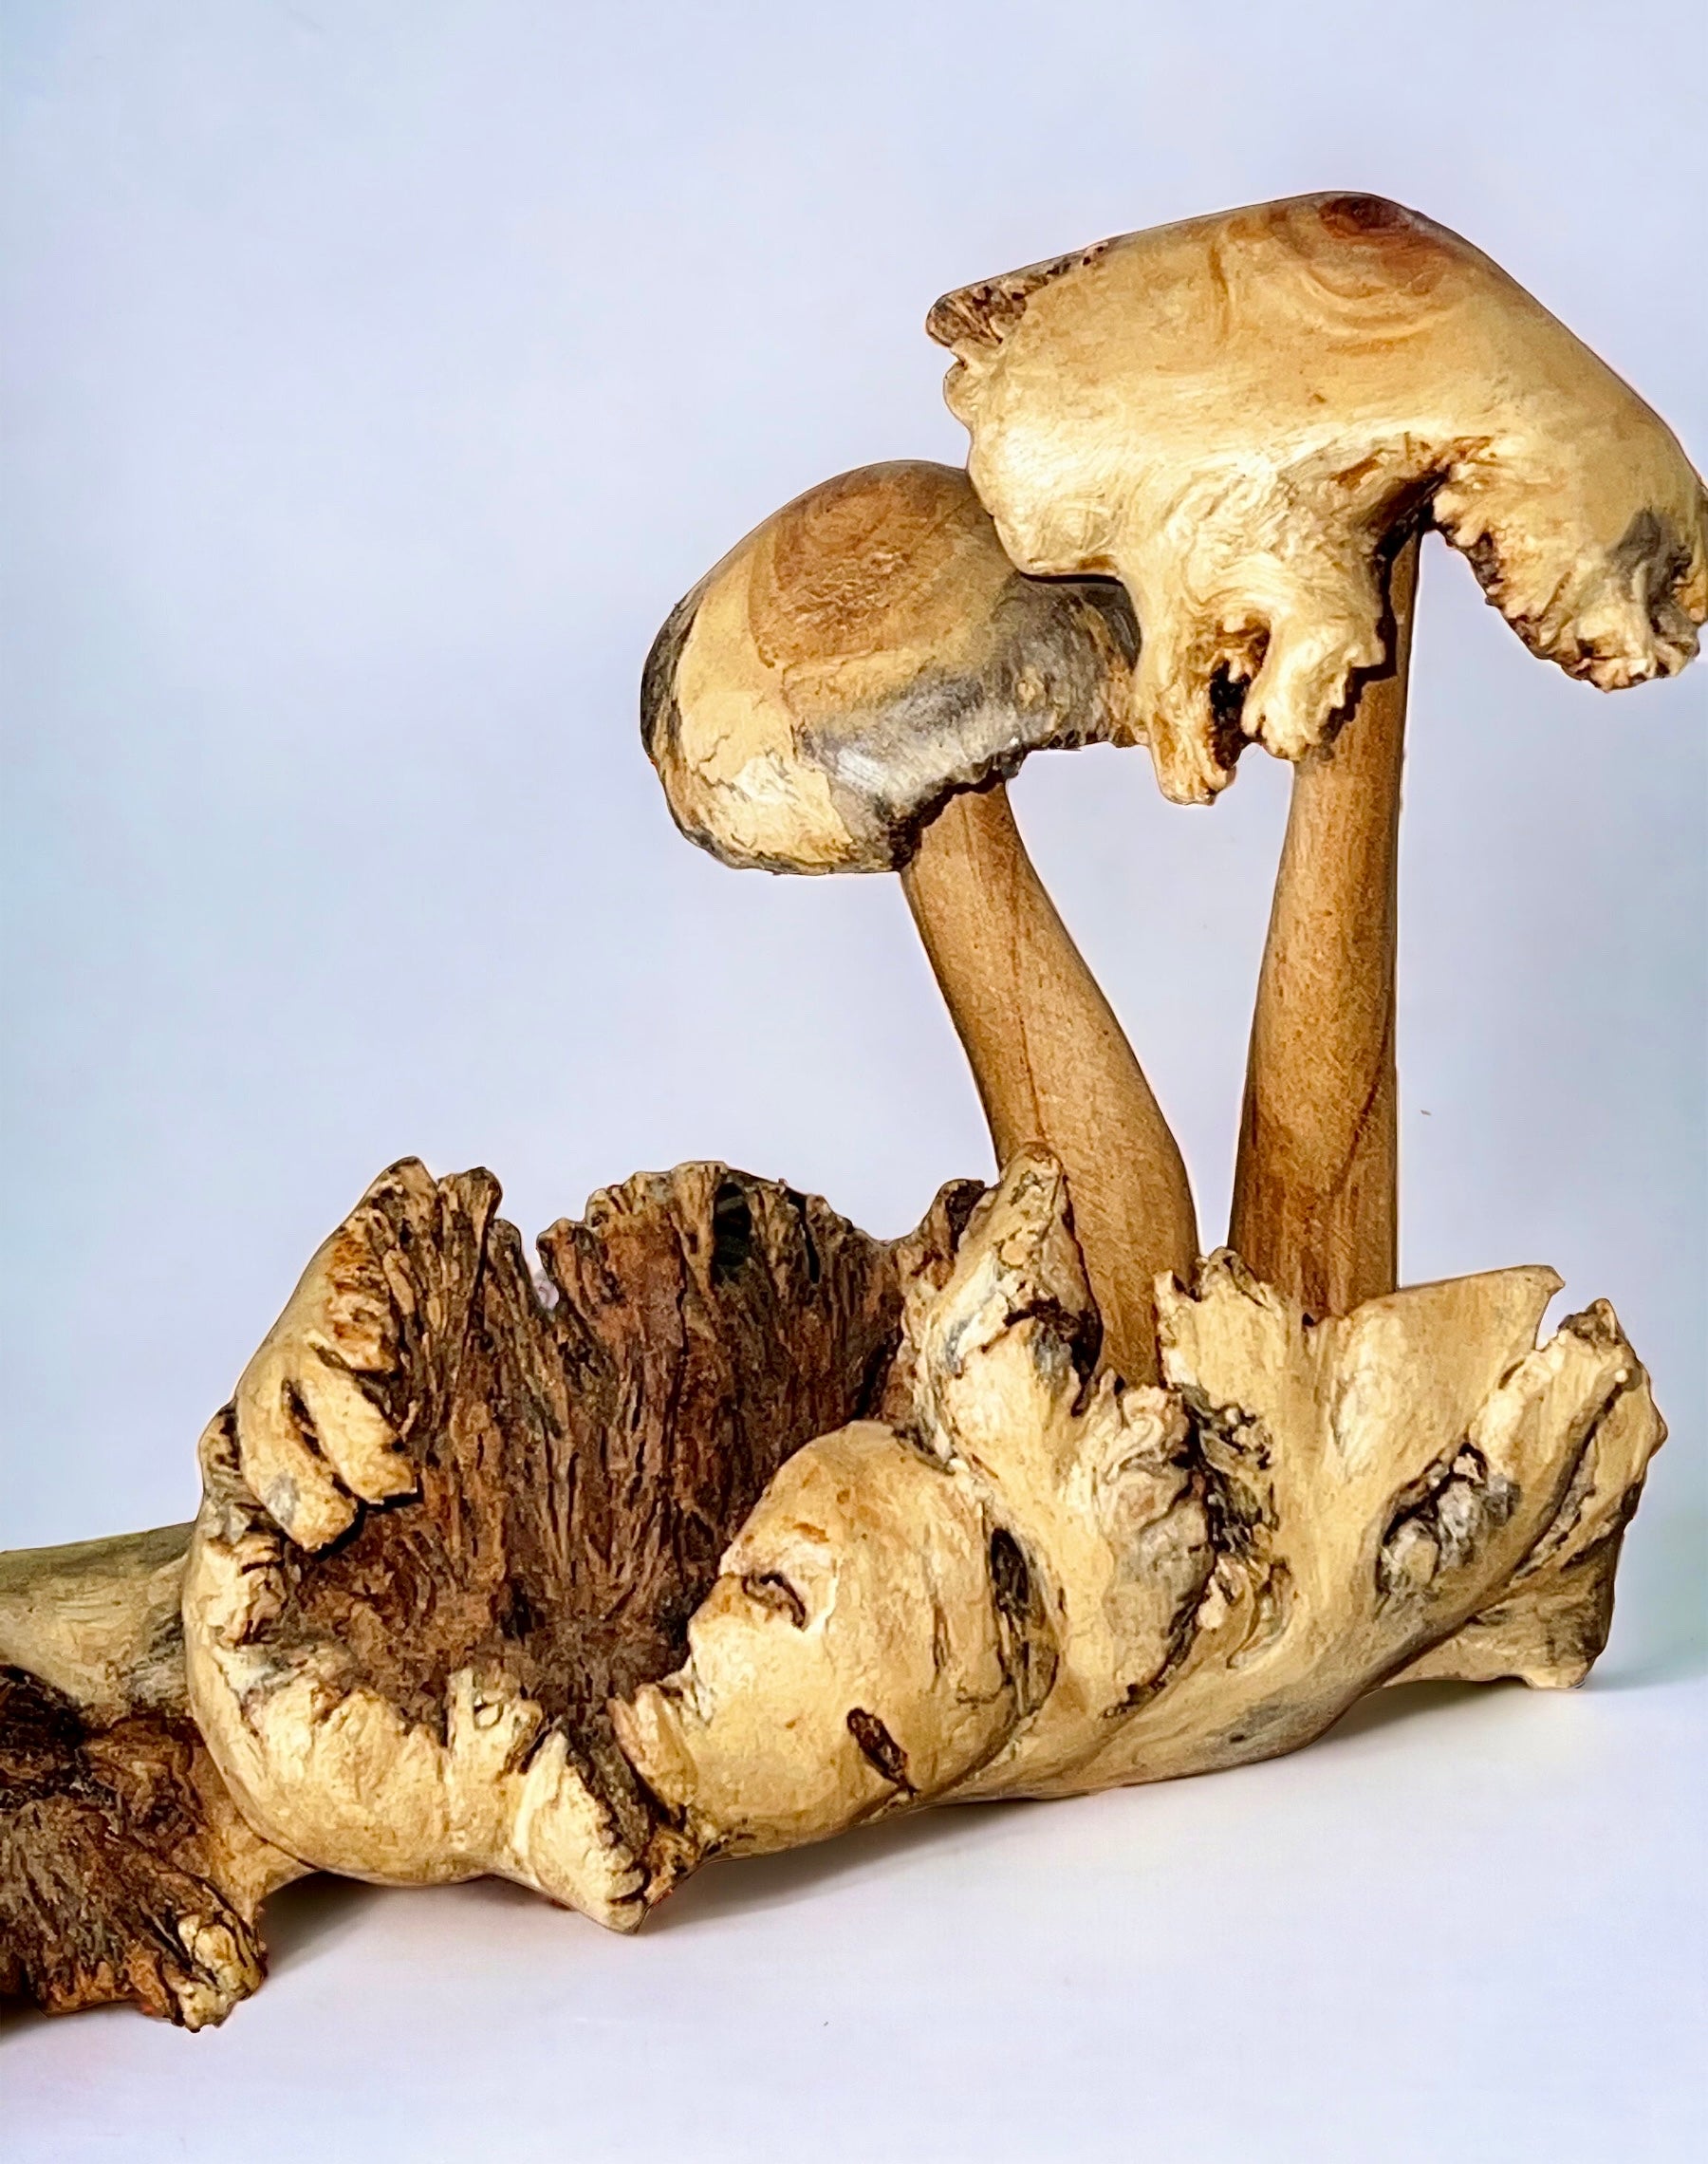 Burl Wood Mushroom 5 Toadstools Sculpture (Vintage)